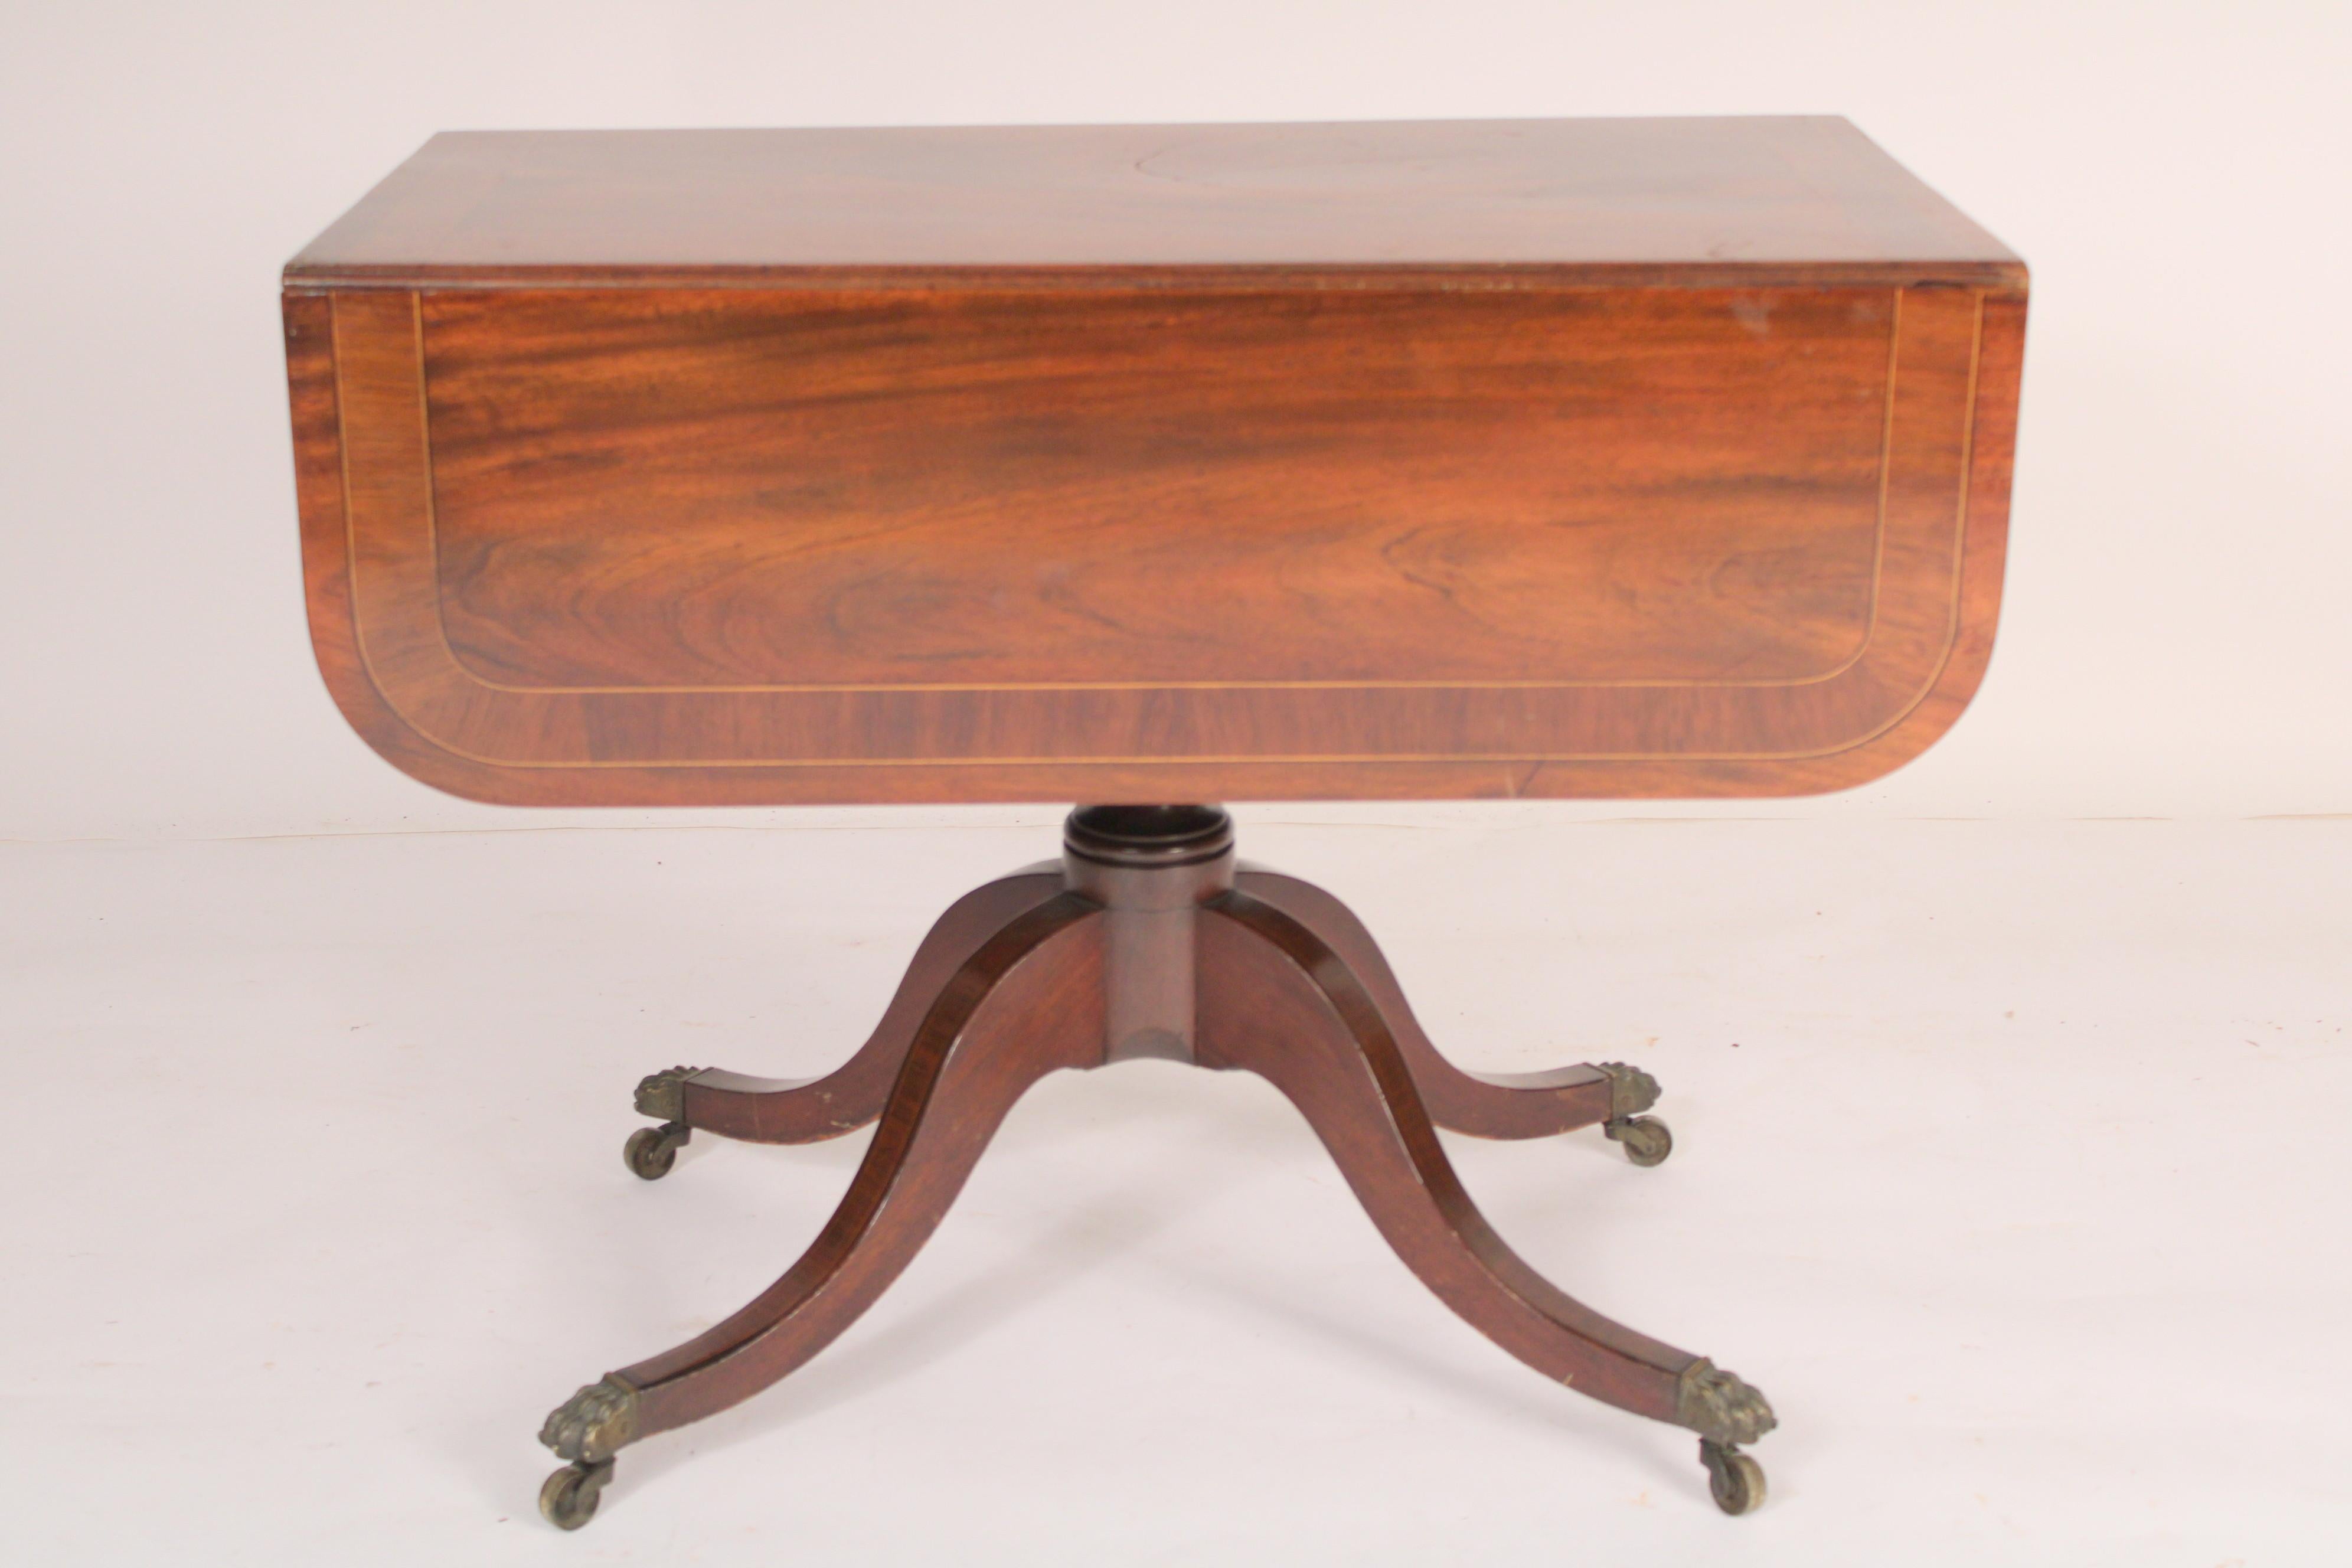 Table d'appoint à abattant en acajou de style Régence anglaise, vers 1820. Un exquis plateau en acajou avec des bandes croisées en bois de rose, un tiroir en frise avec des boutons en bois, un piédestal à balustres et anneaux tournés, quatre pieds